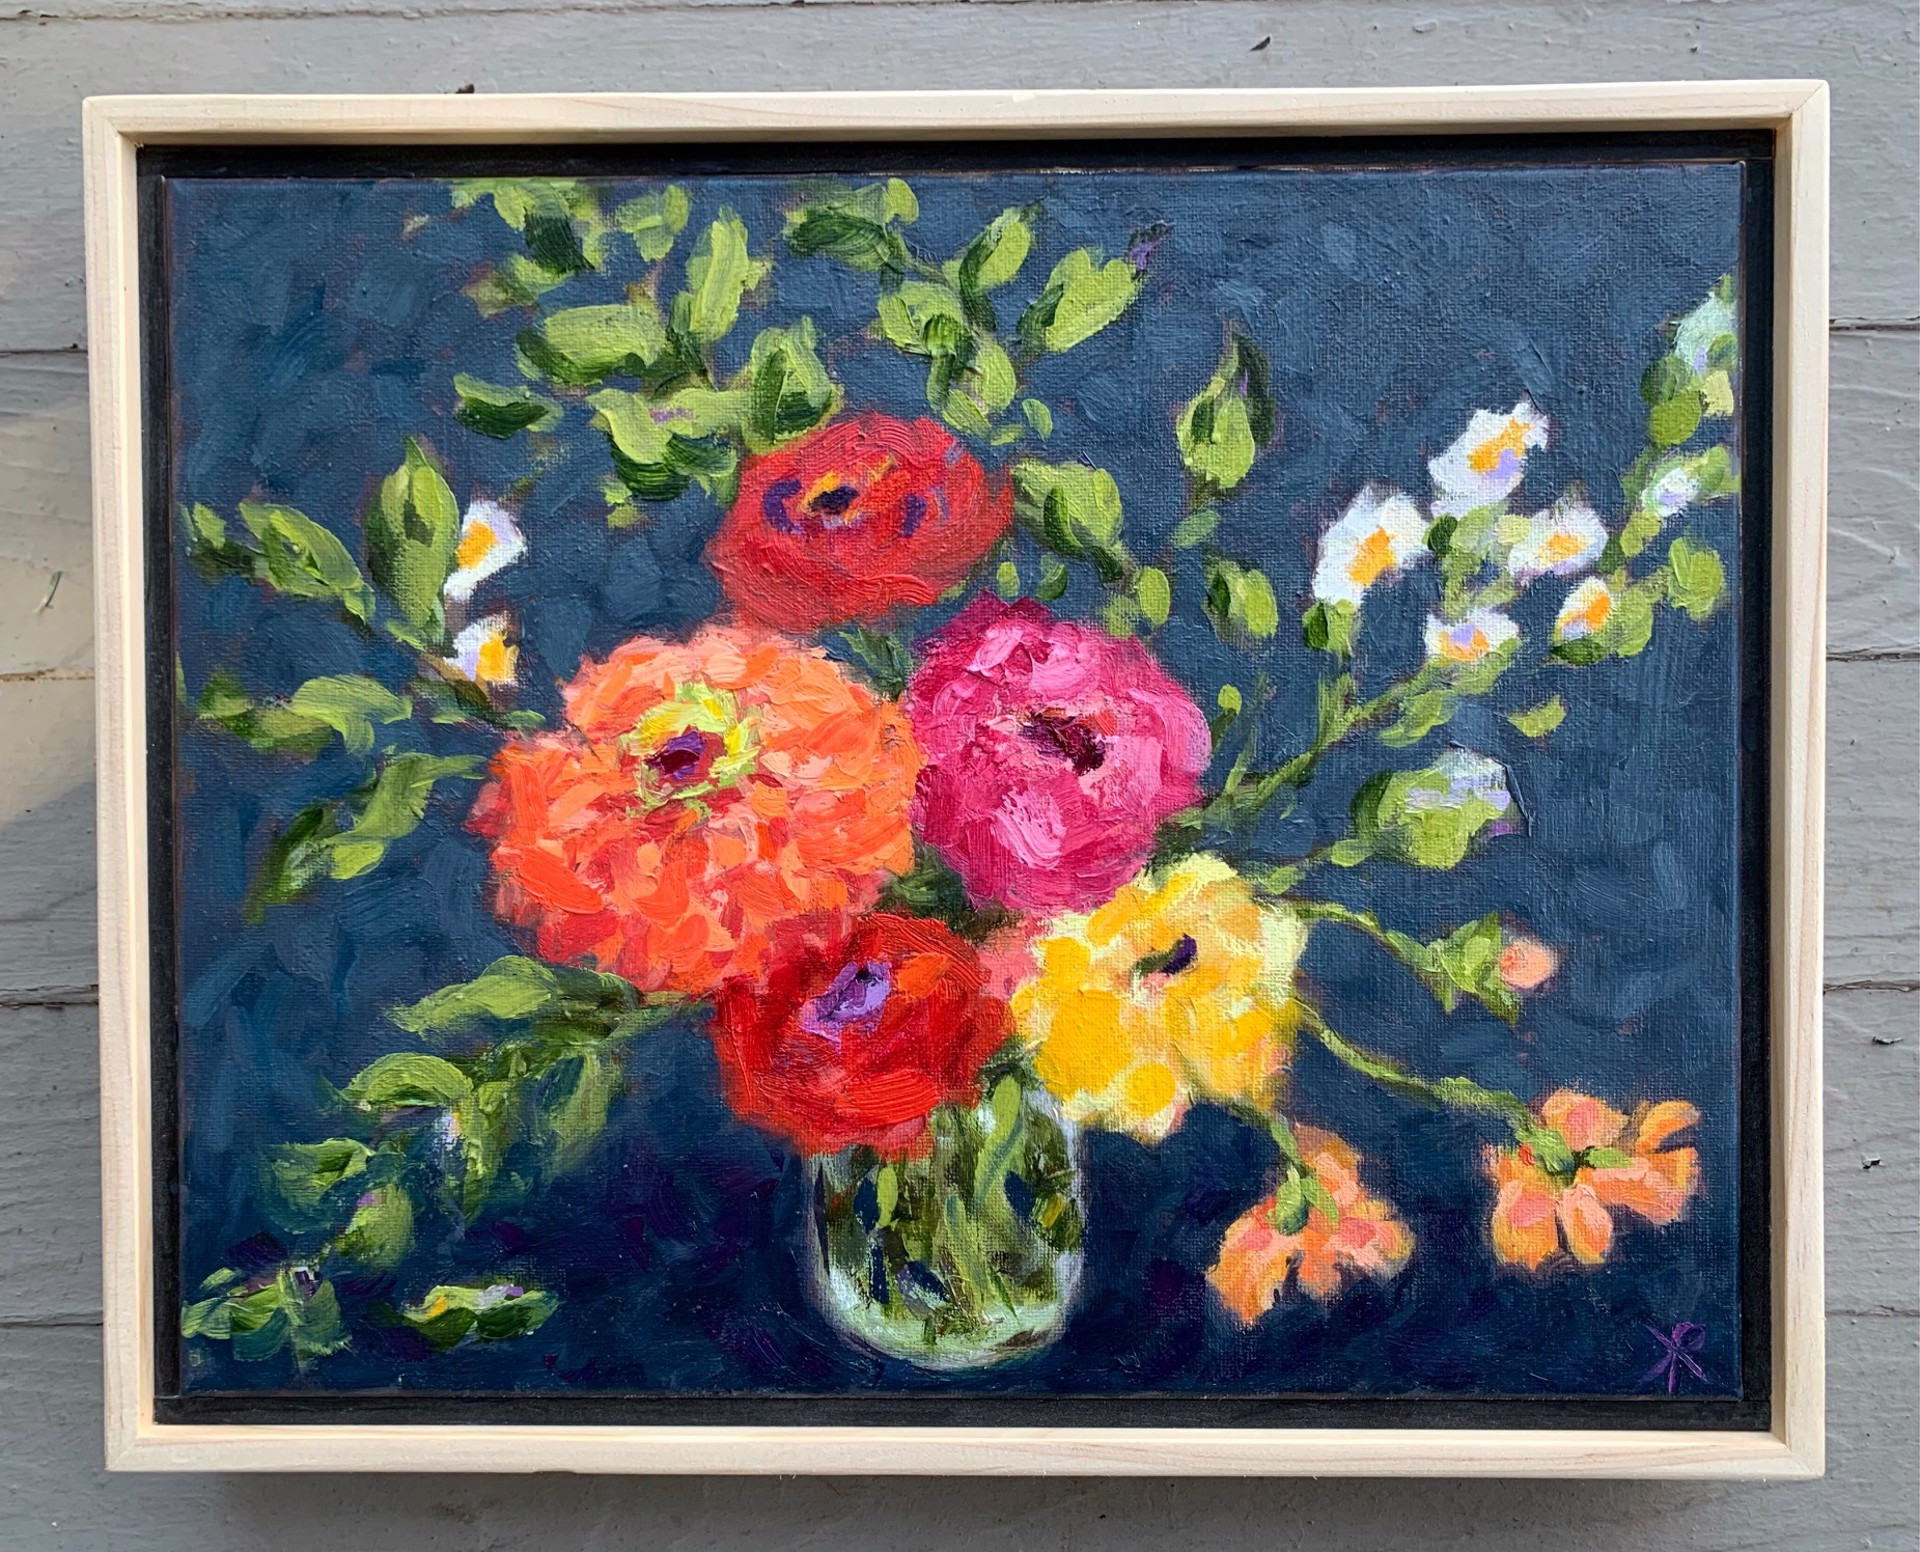 Joyful Blooms by Kirsten Rose